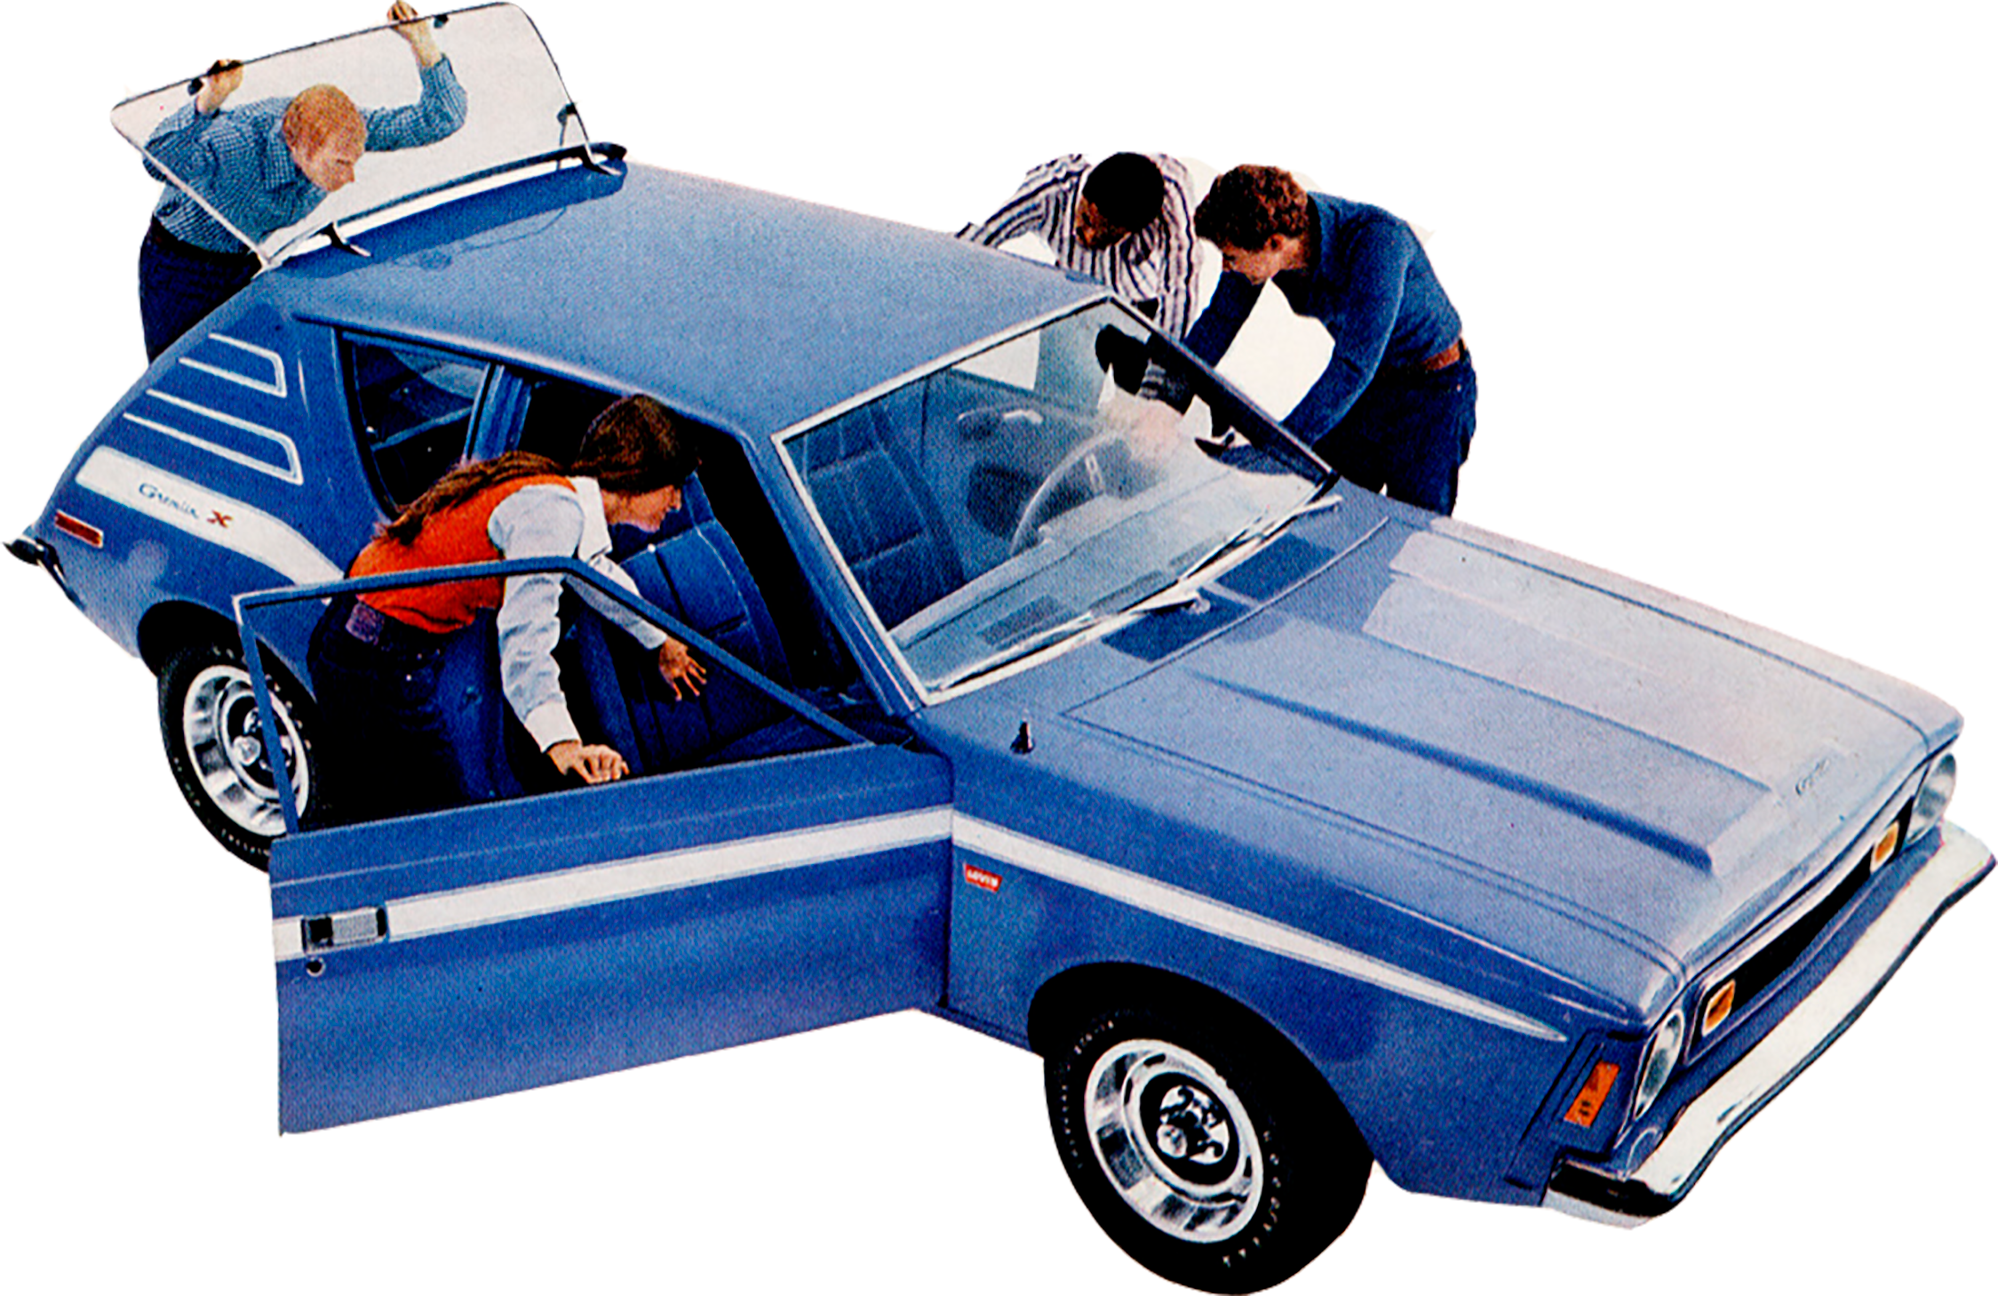 AMC Gremlin - 1970-78 — Curbside Car Show Calendar